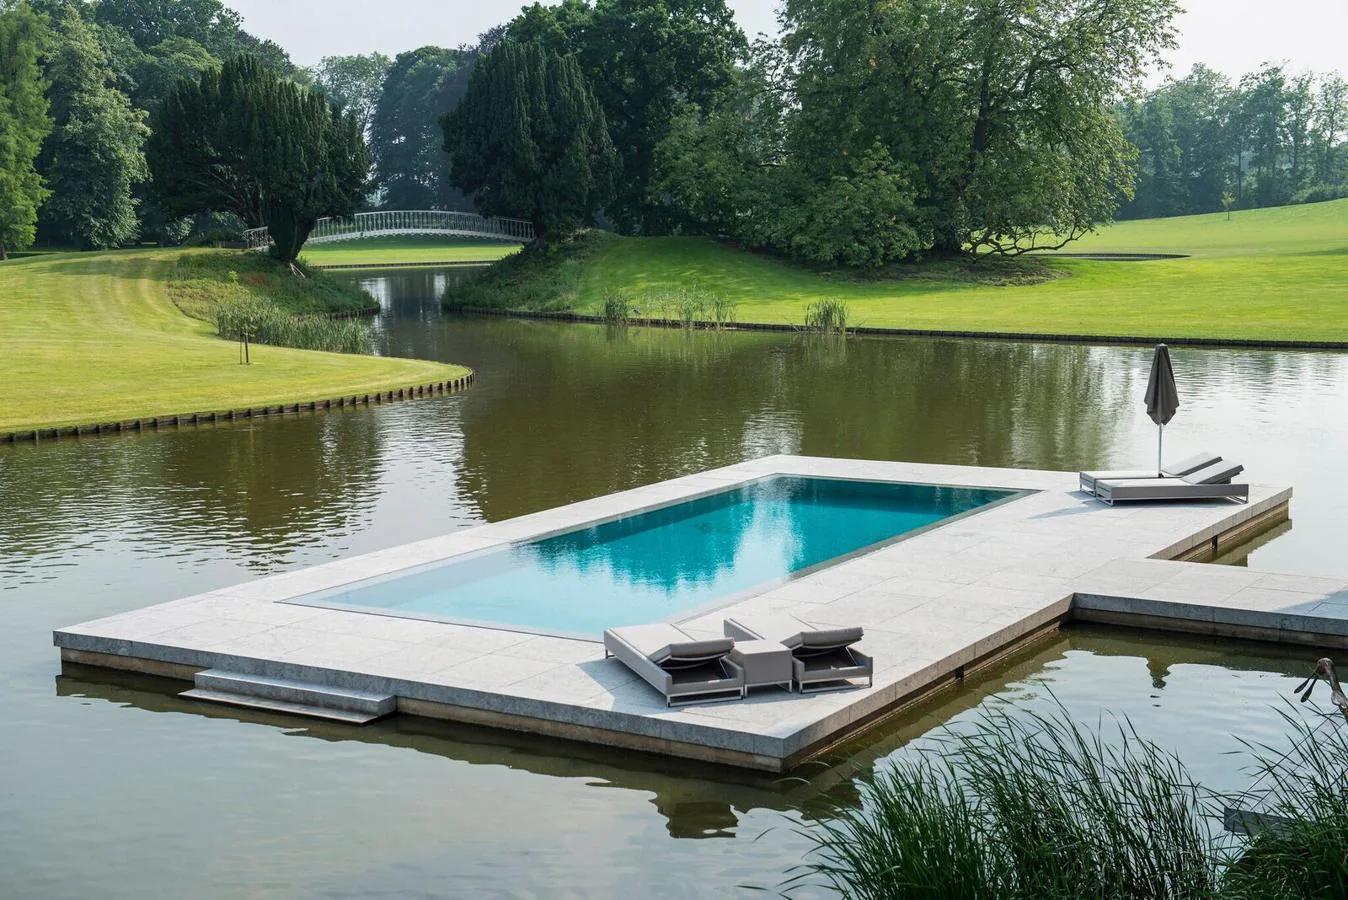 Kasteel van Olsene, Bélgica. Su entorno es espectacular, está emplazado en un parque de 15 hectáreas y sobre el foso que lo rodea se construyó una piscina exterior que hará las delicias de los ratos de ocio